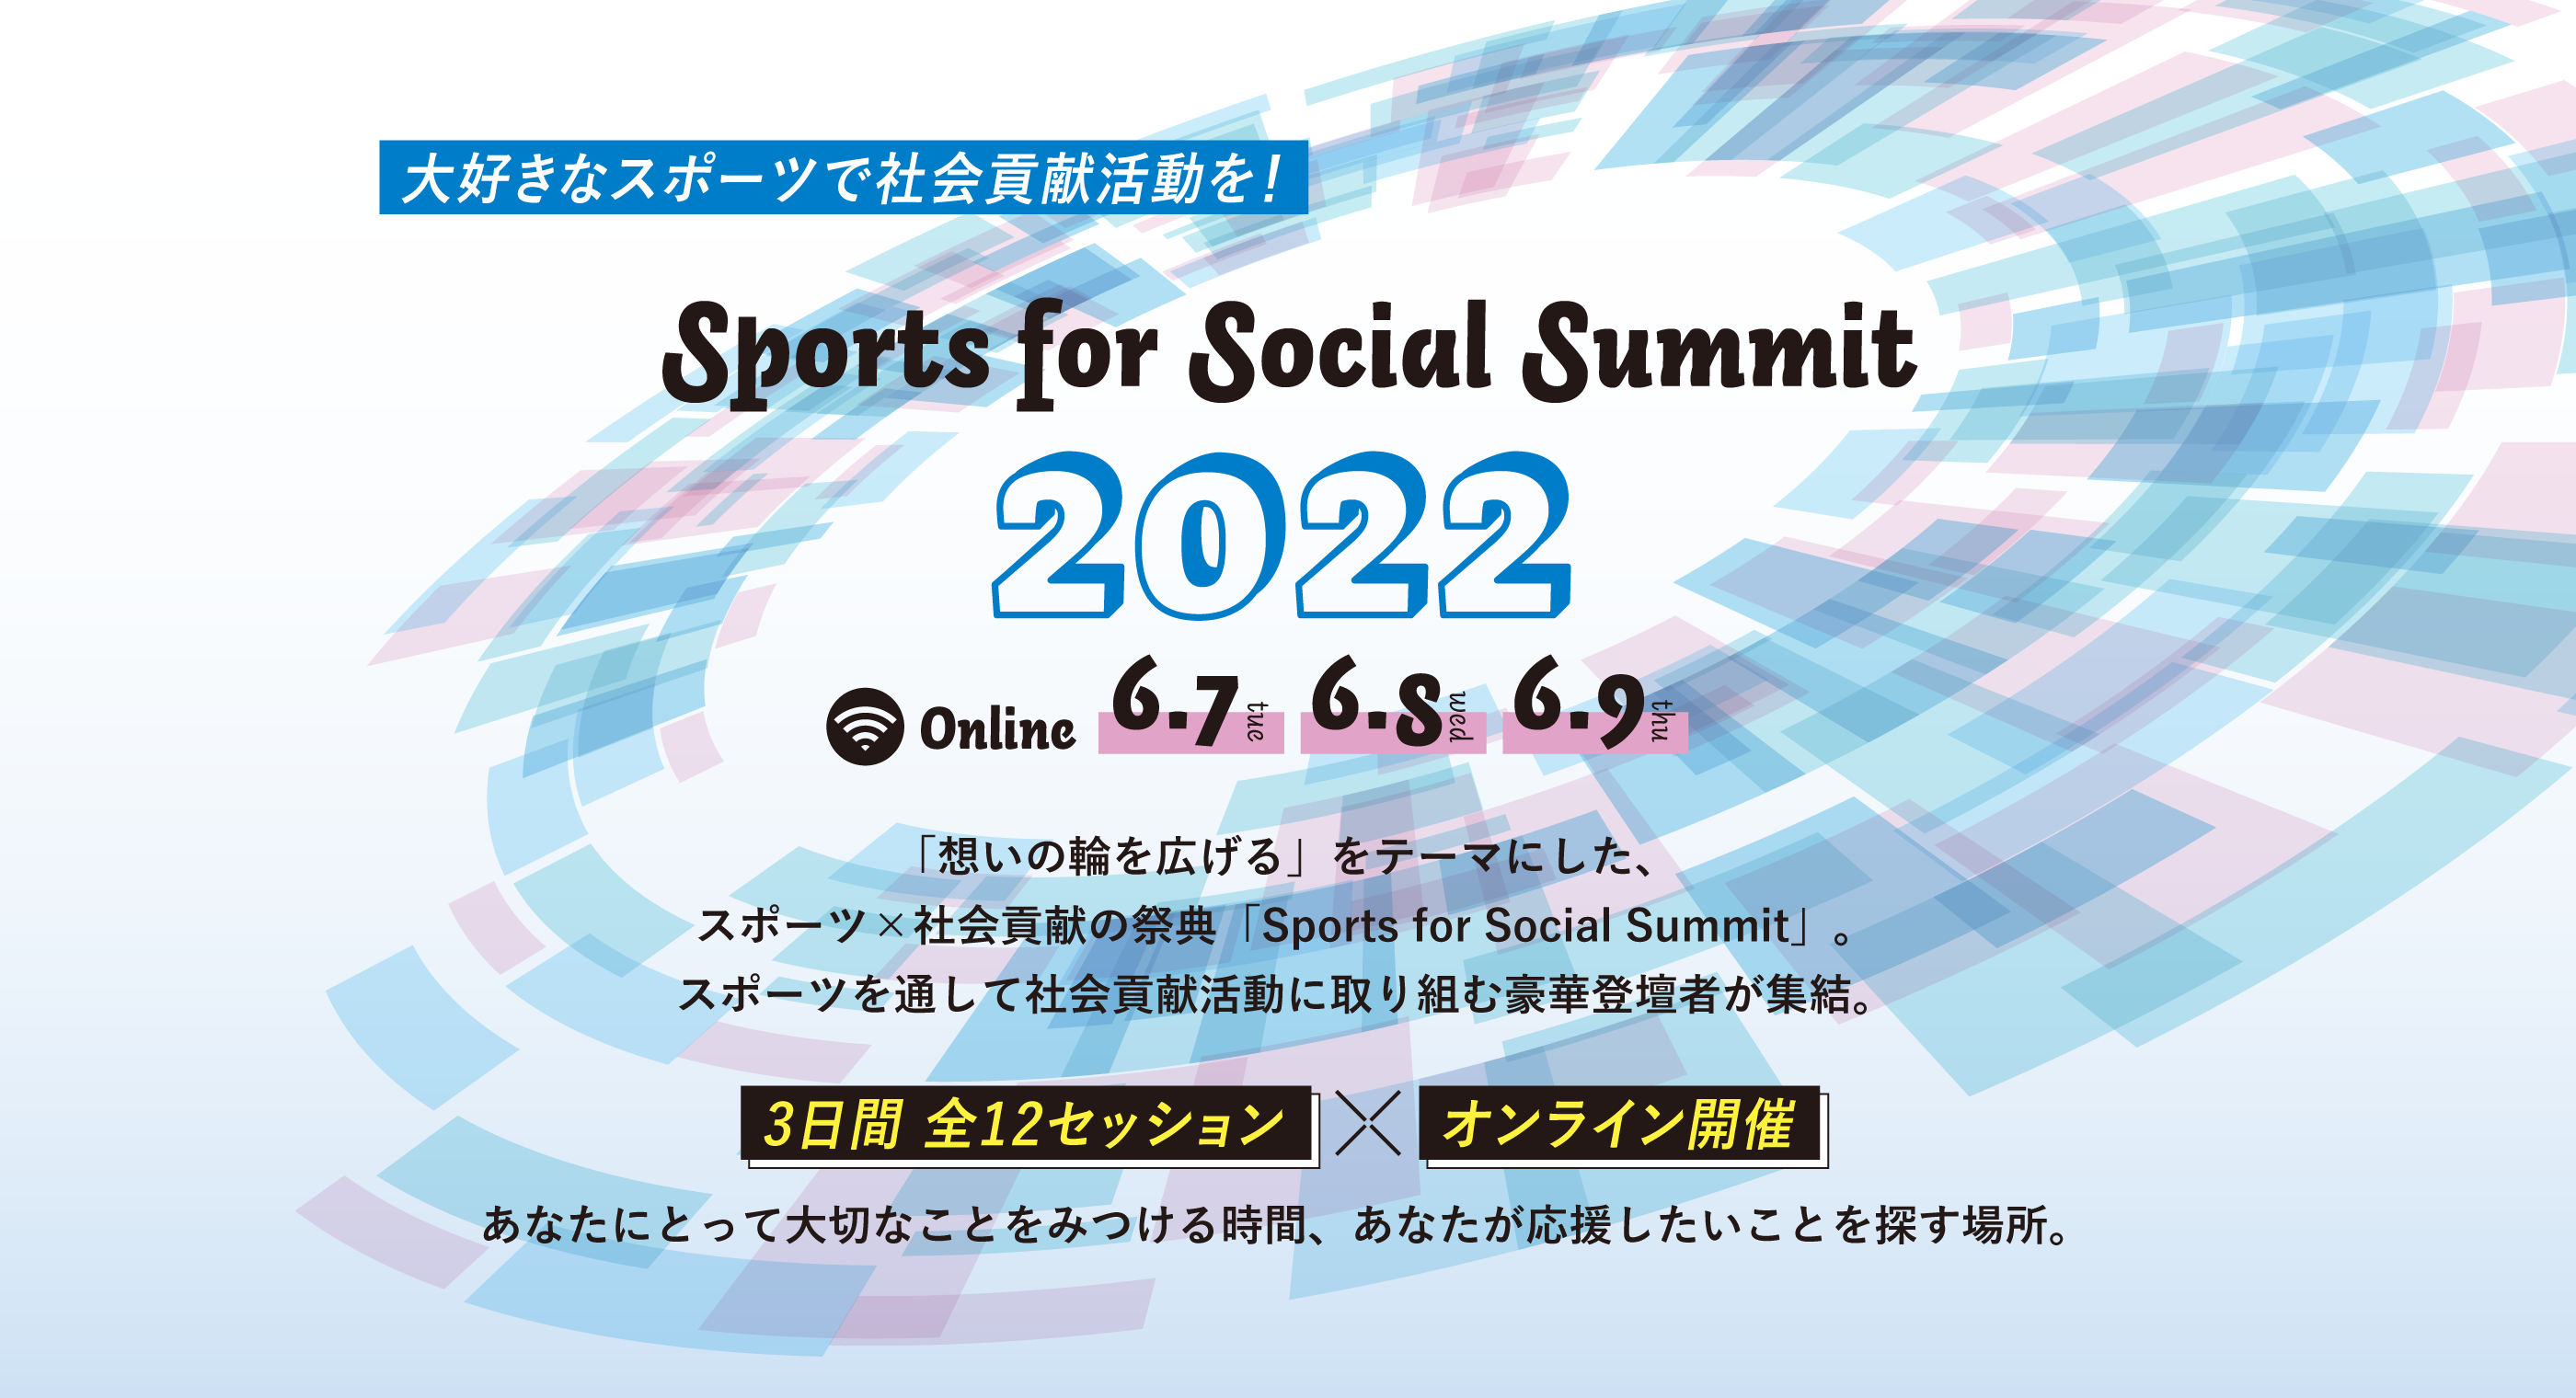 大好きなスポーツで社会貢献活動を！Sports for Social Summit2022